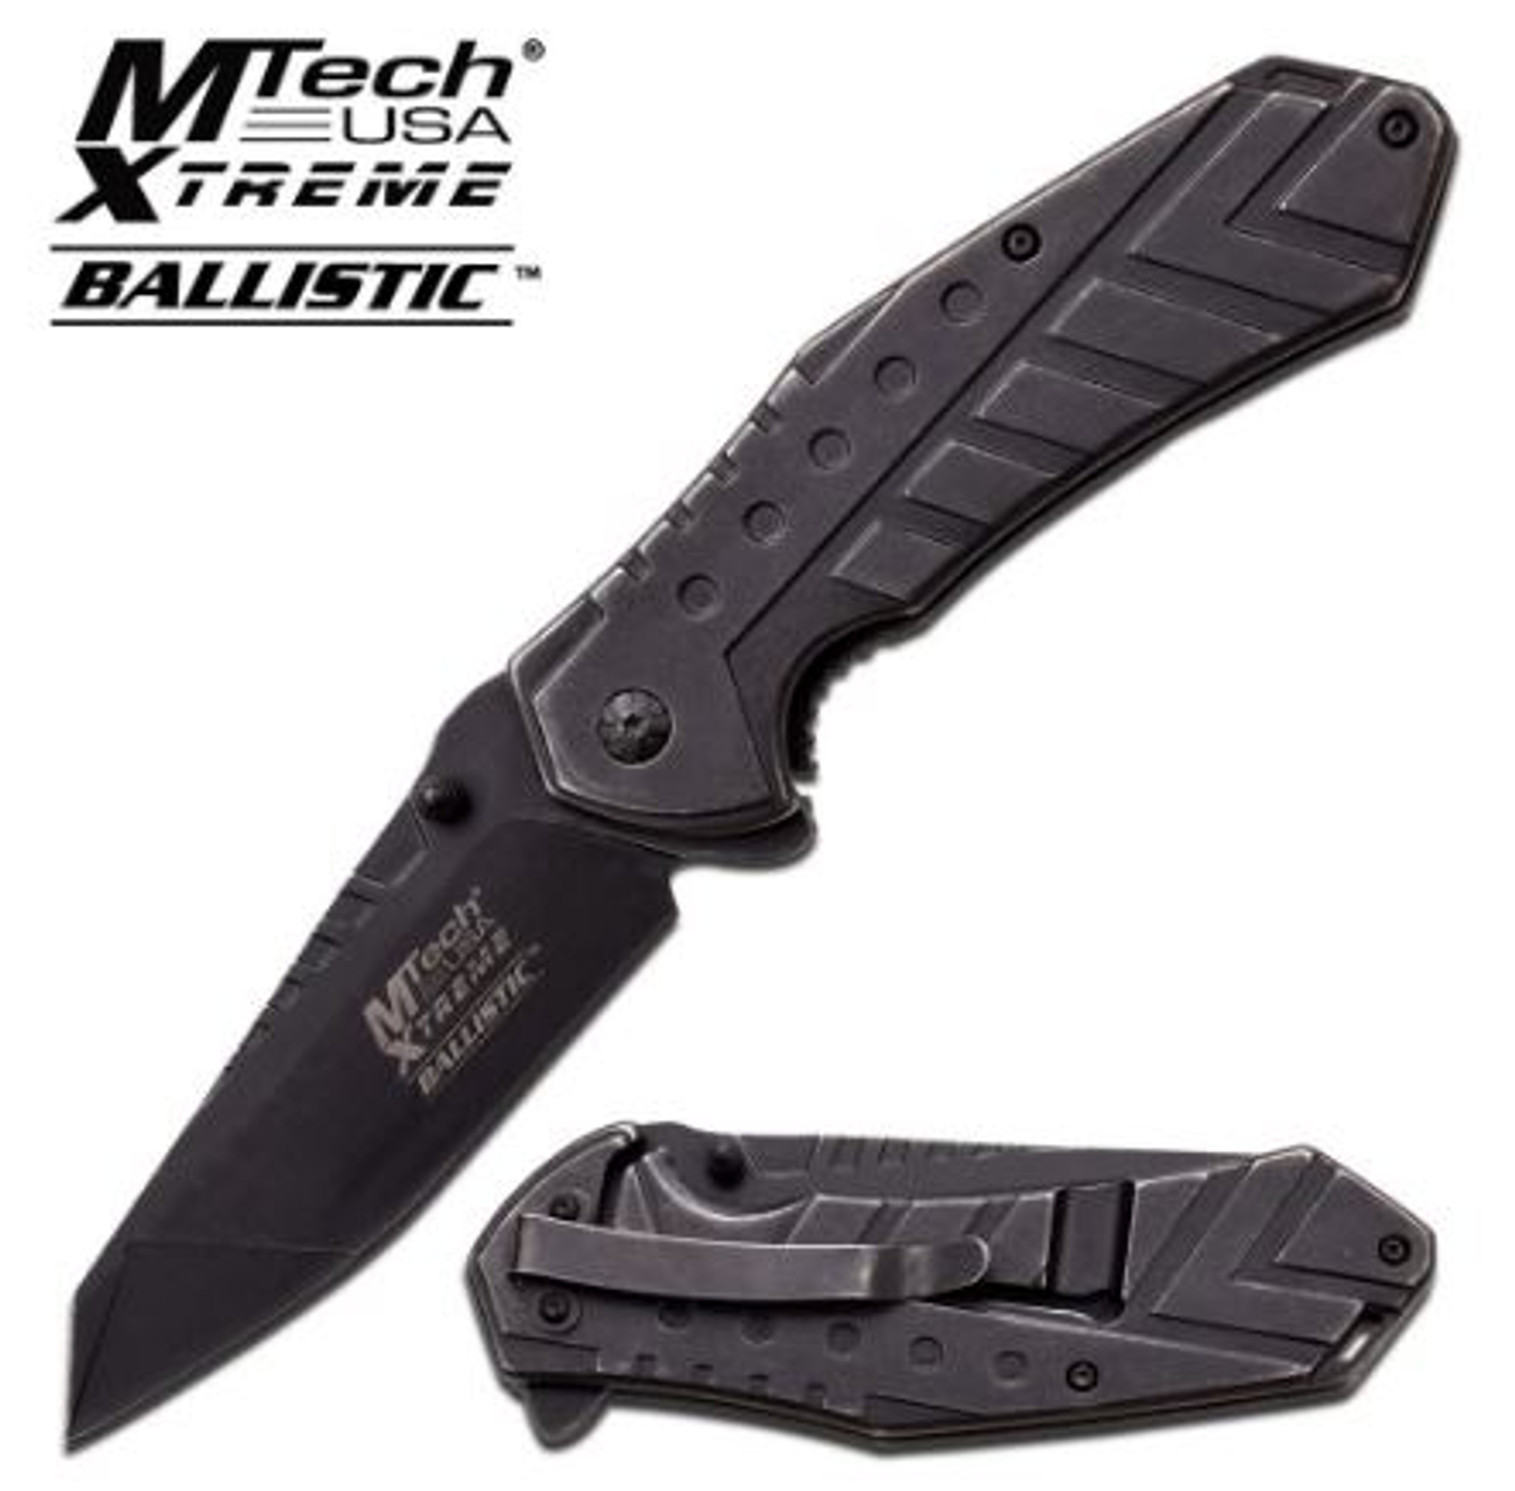 Mtech Xtreme MXA837BK Folding Knife Assisted Opening